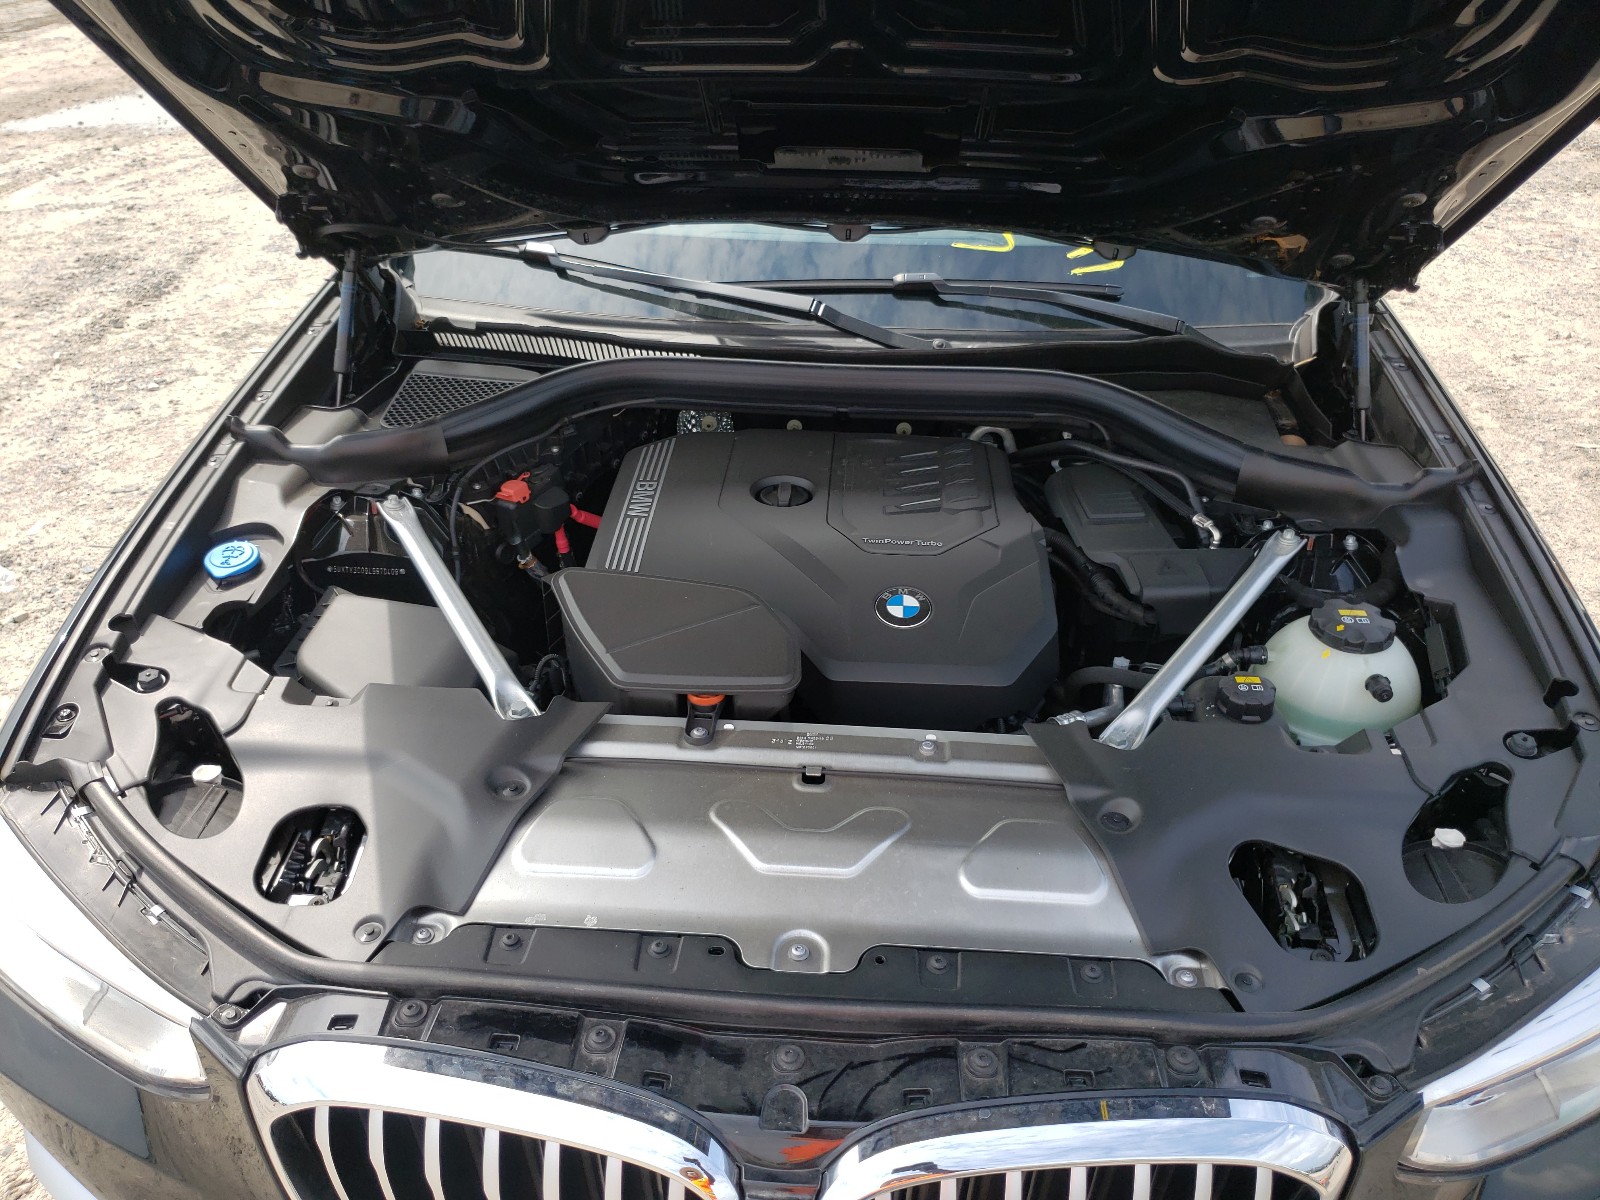 Samochód 2020 BMW X3 SDRIVE30I kupić na aukcji Copart w